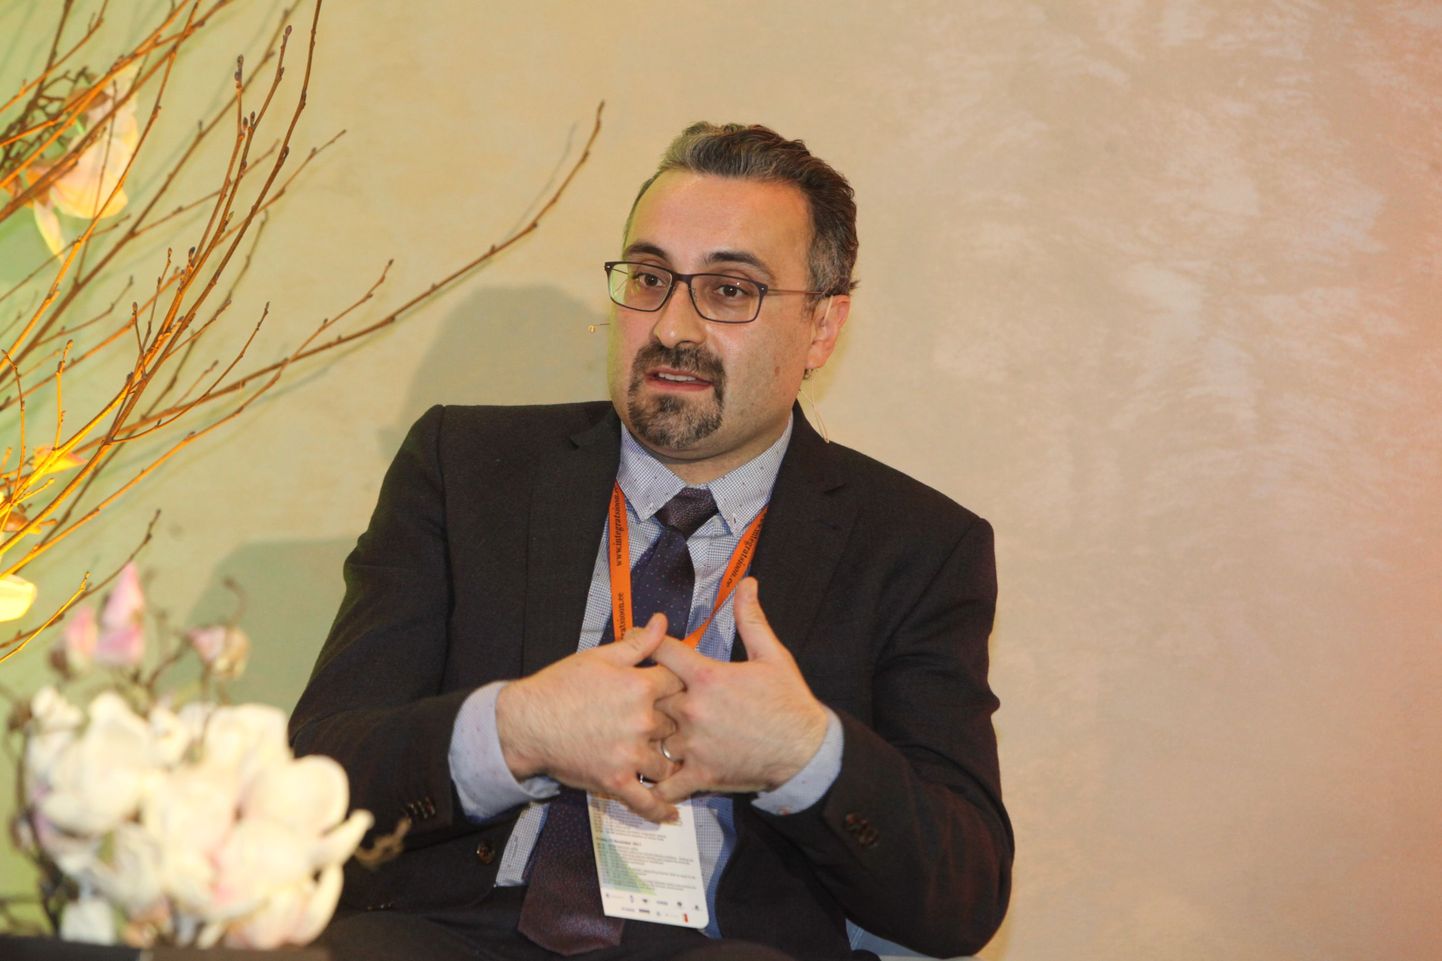 Suurbritannias lõimumisküsimustega tegelev analüütik Omar Khan astus novembris üles Tallinnas toimunud Integratsiooni Sihtasutuse konverentsil.